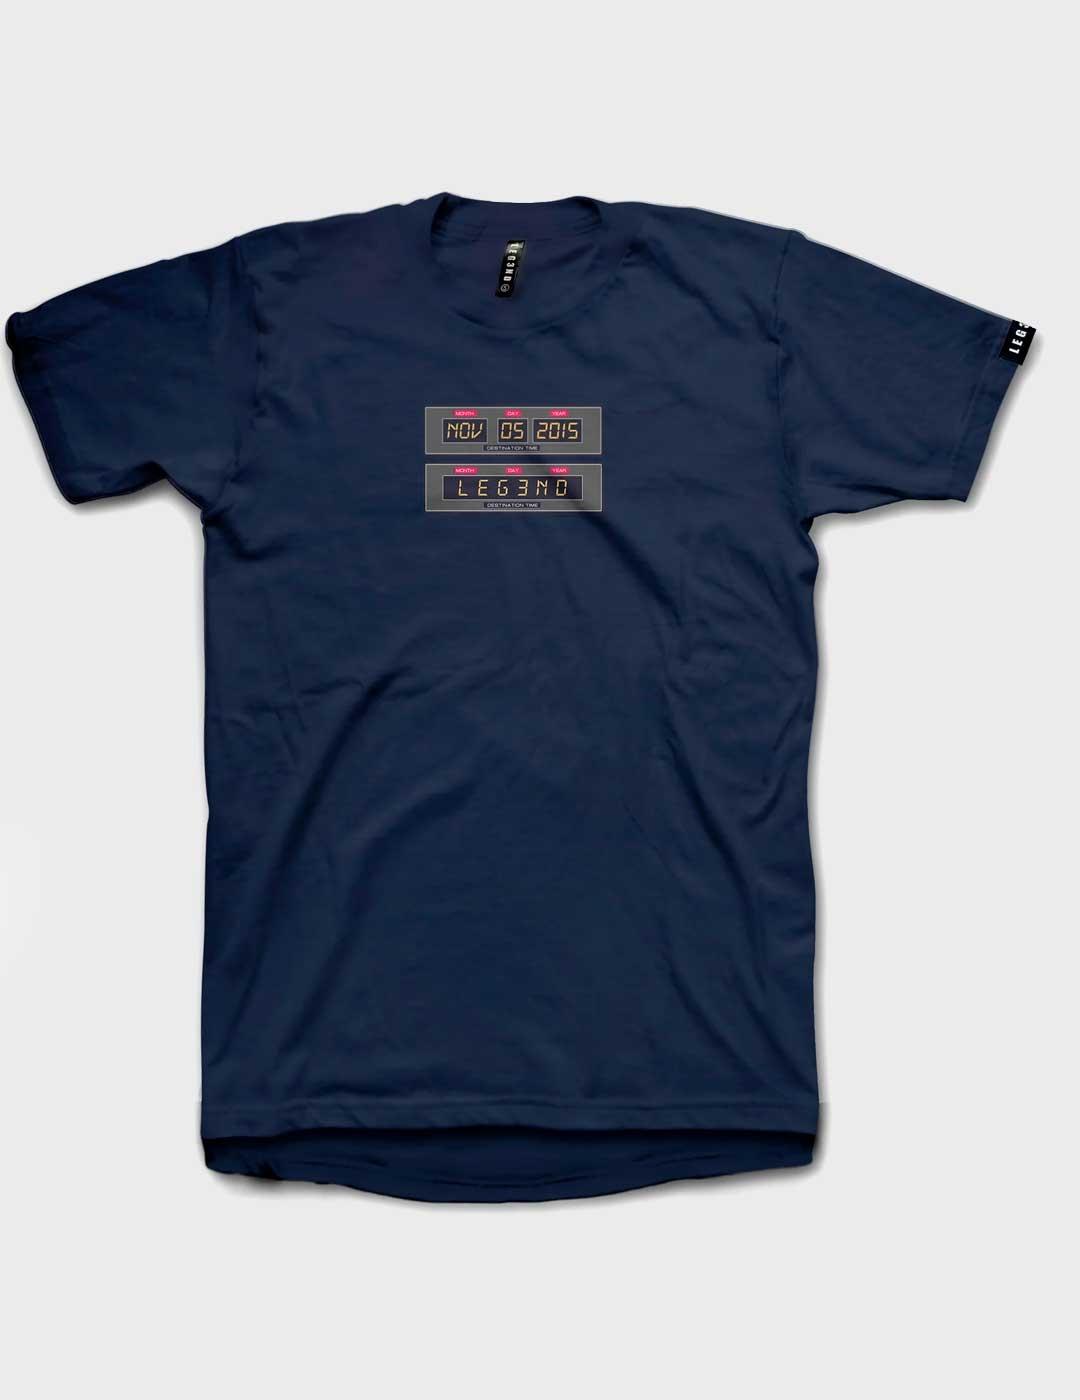 Camiseta Leg3nd Futuro marina unisex